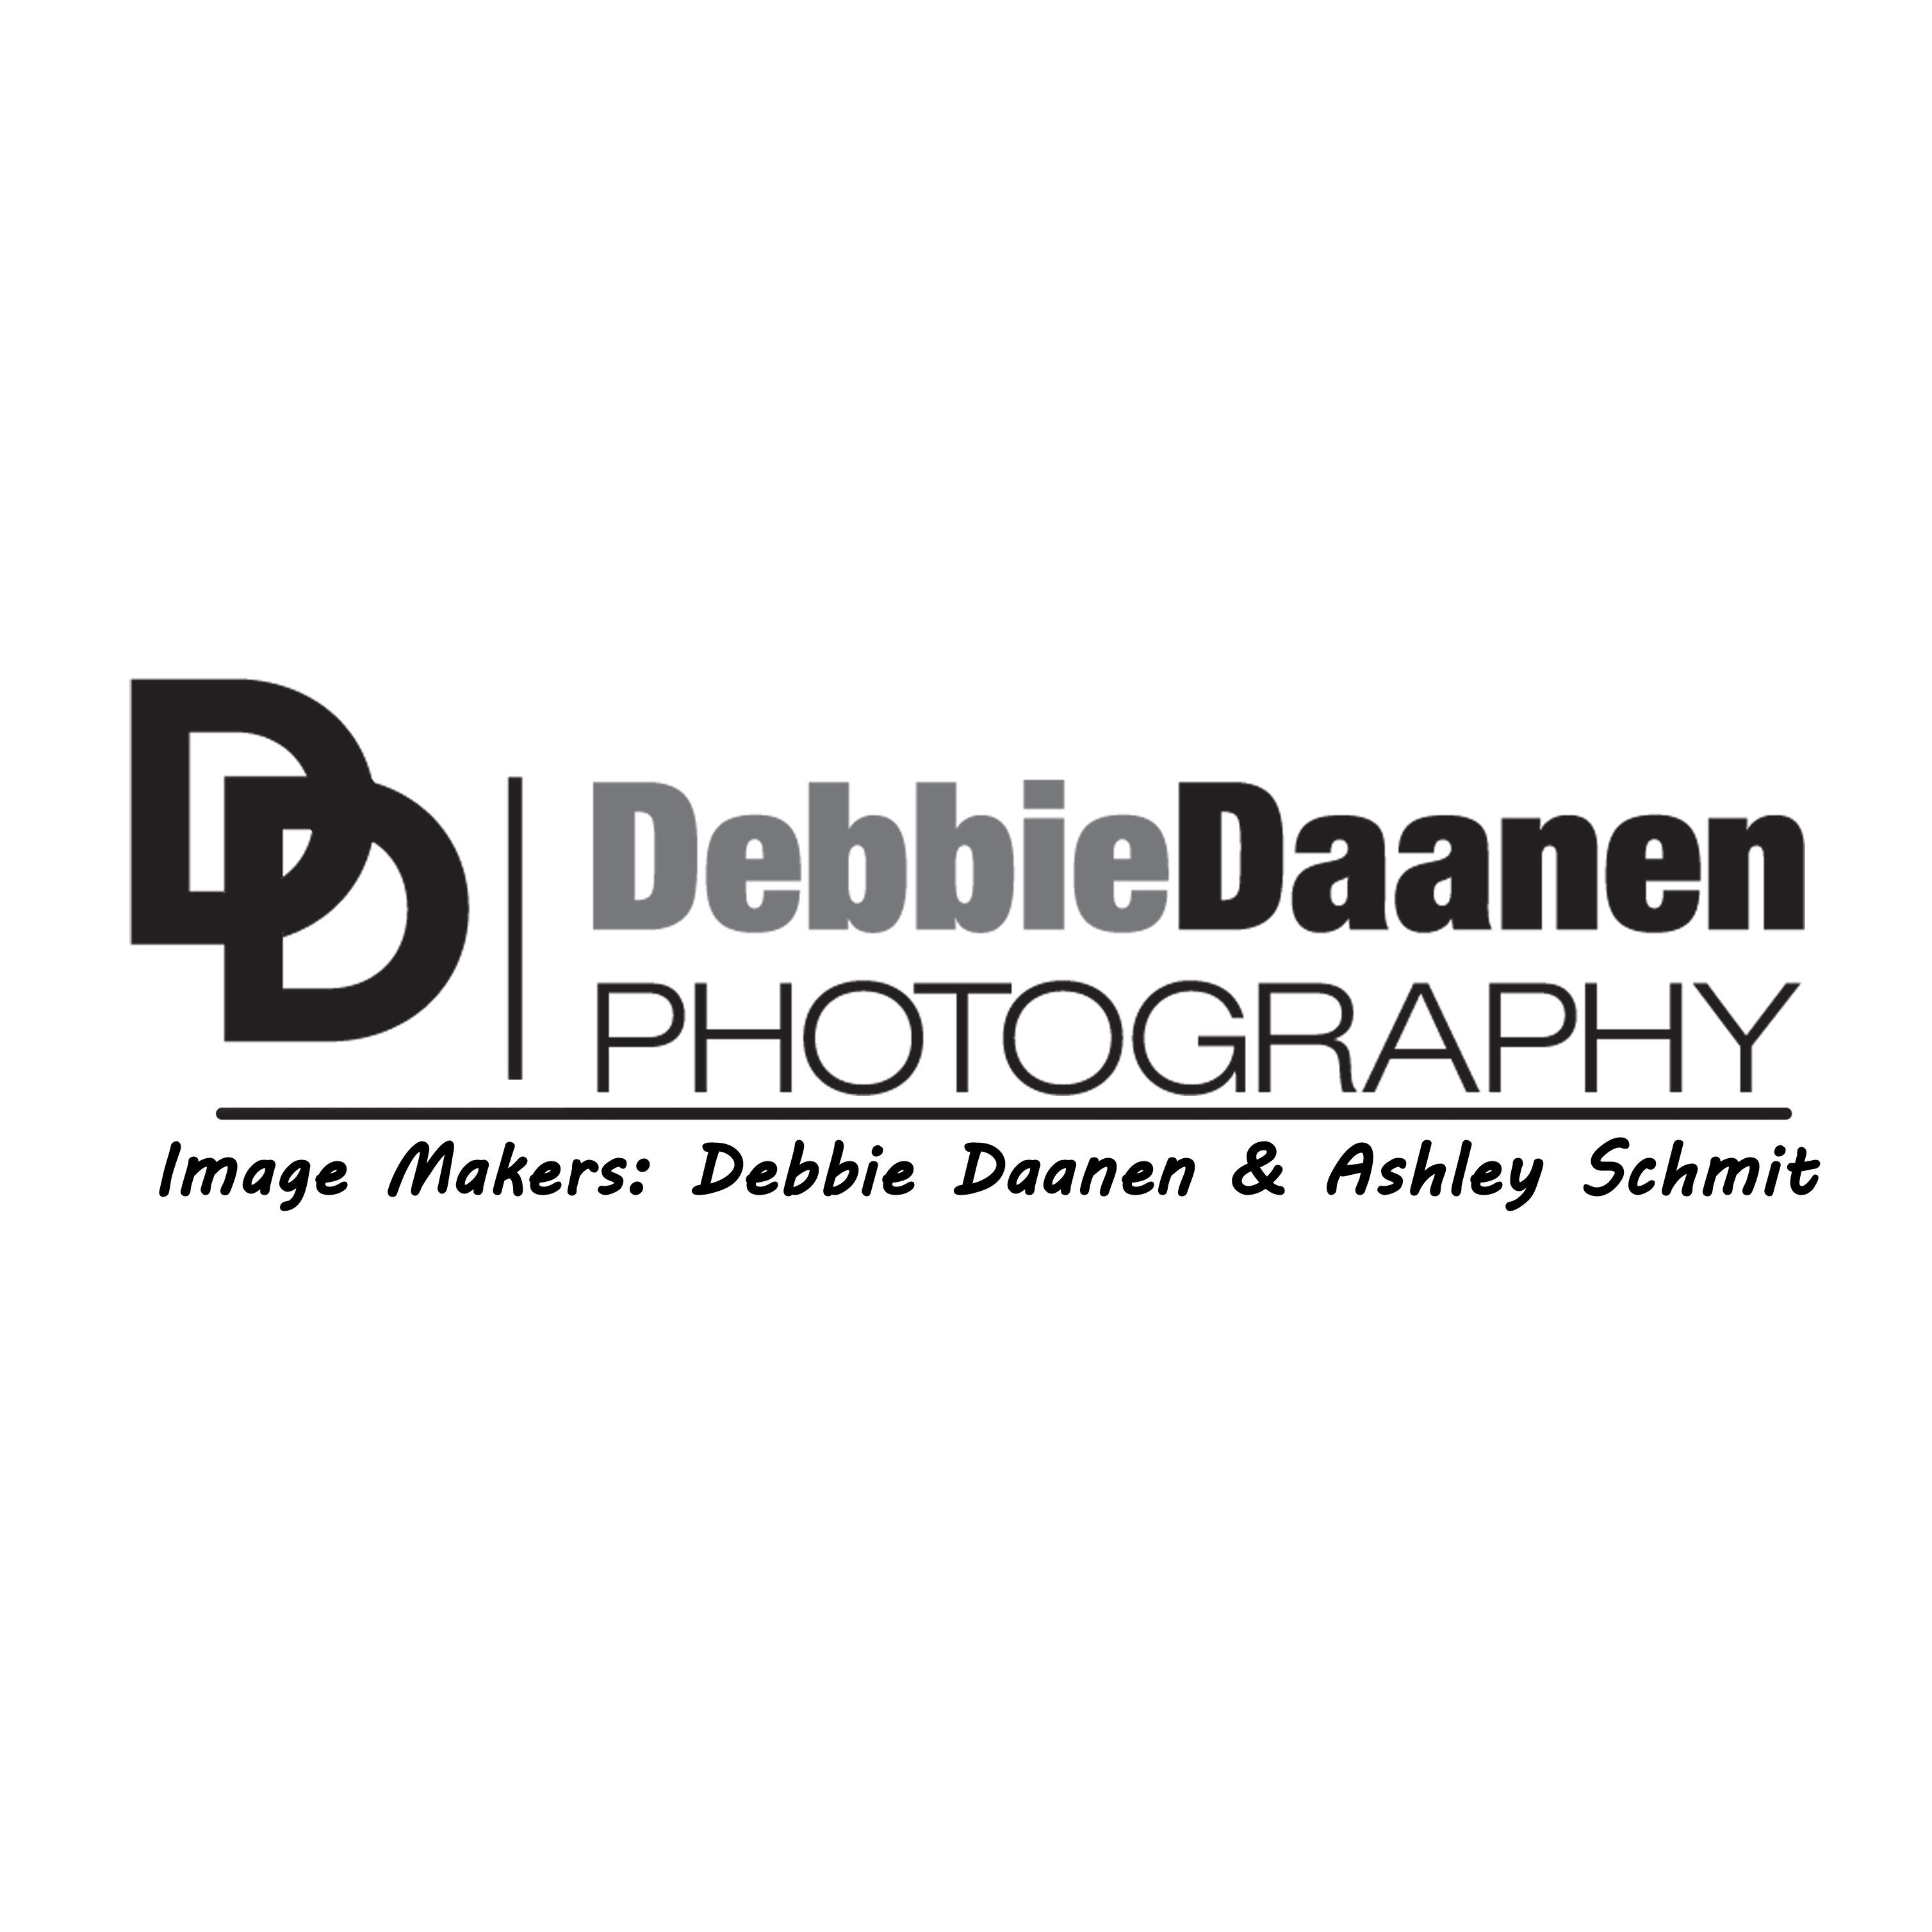 Debbie Daanen Photography Appleton (920)739-3249